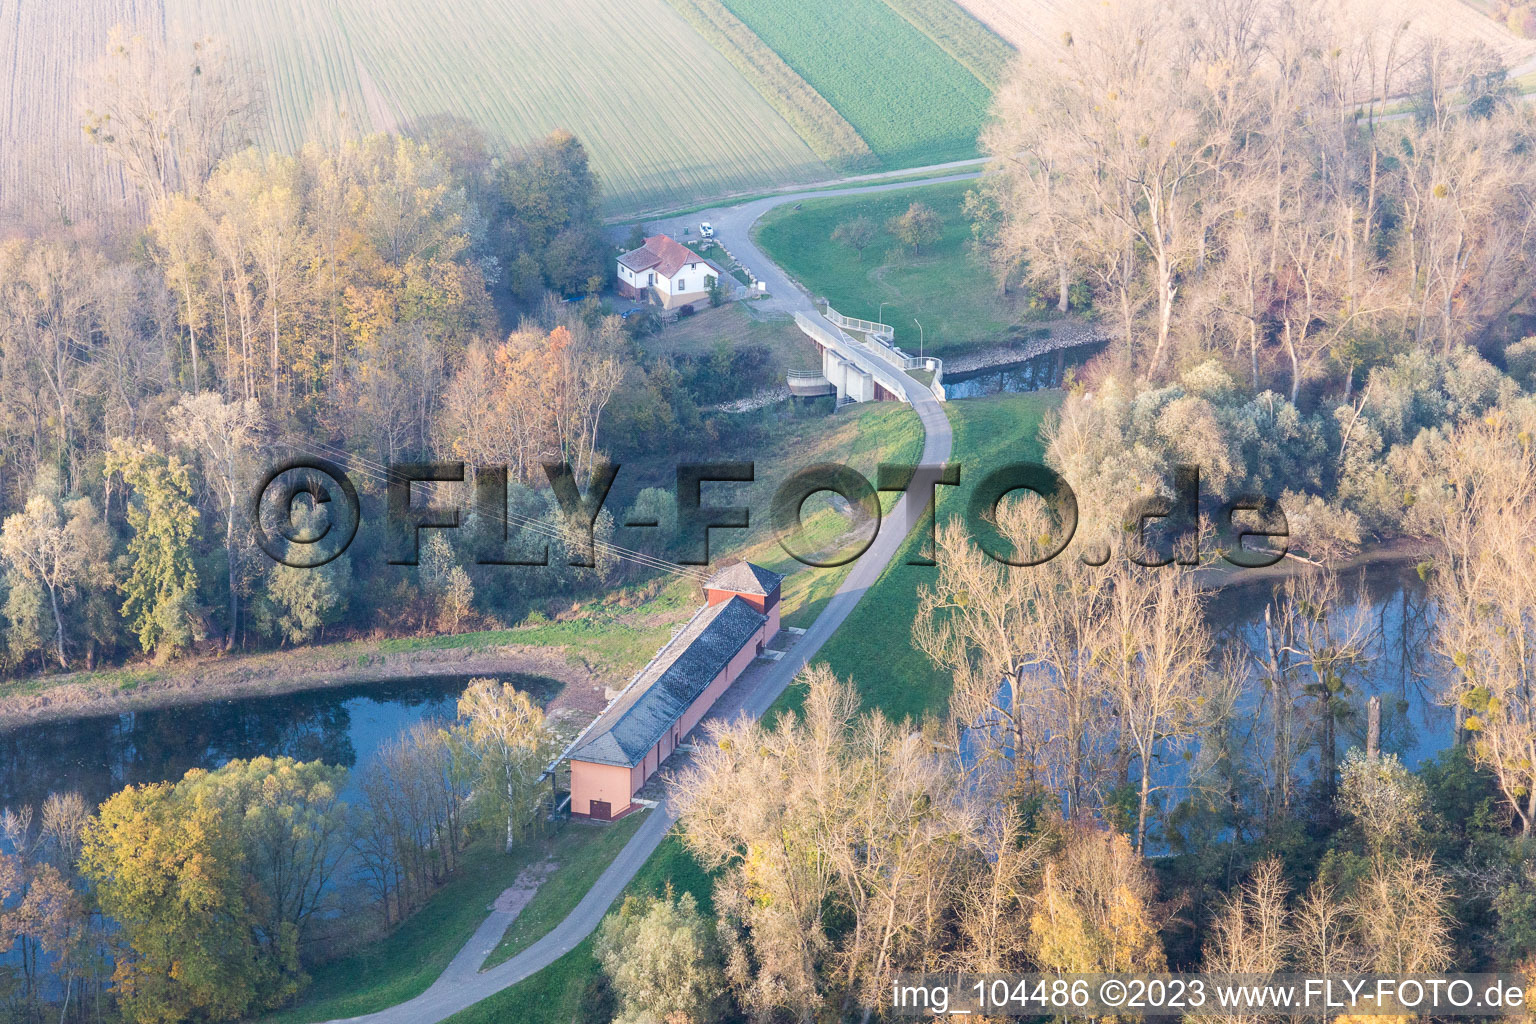 Ortsteil Sondernheim in Germersheim im Bundesland Rheinland-Pfalz, Deutschland aus der Vogelperspektive